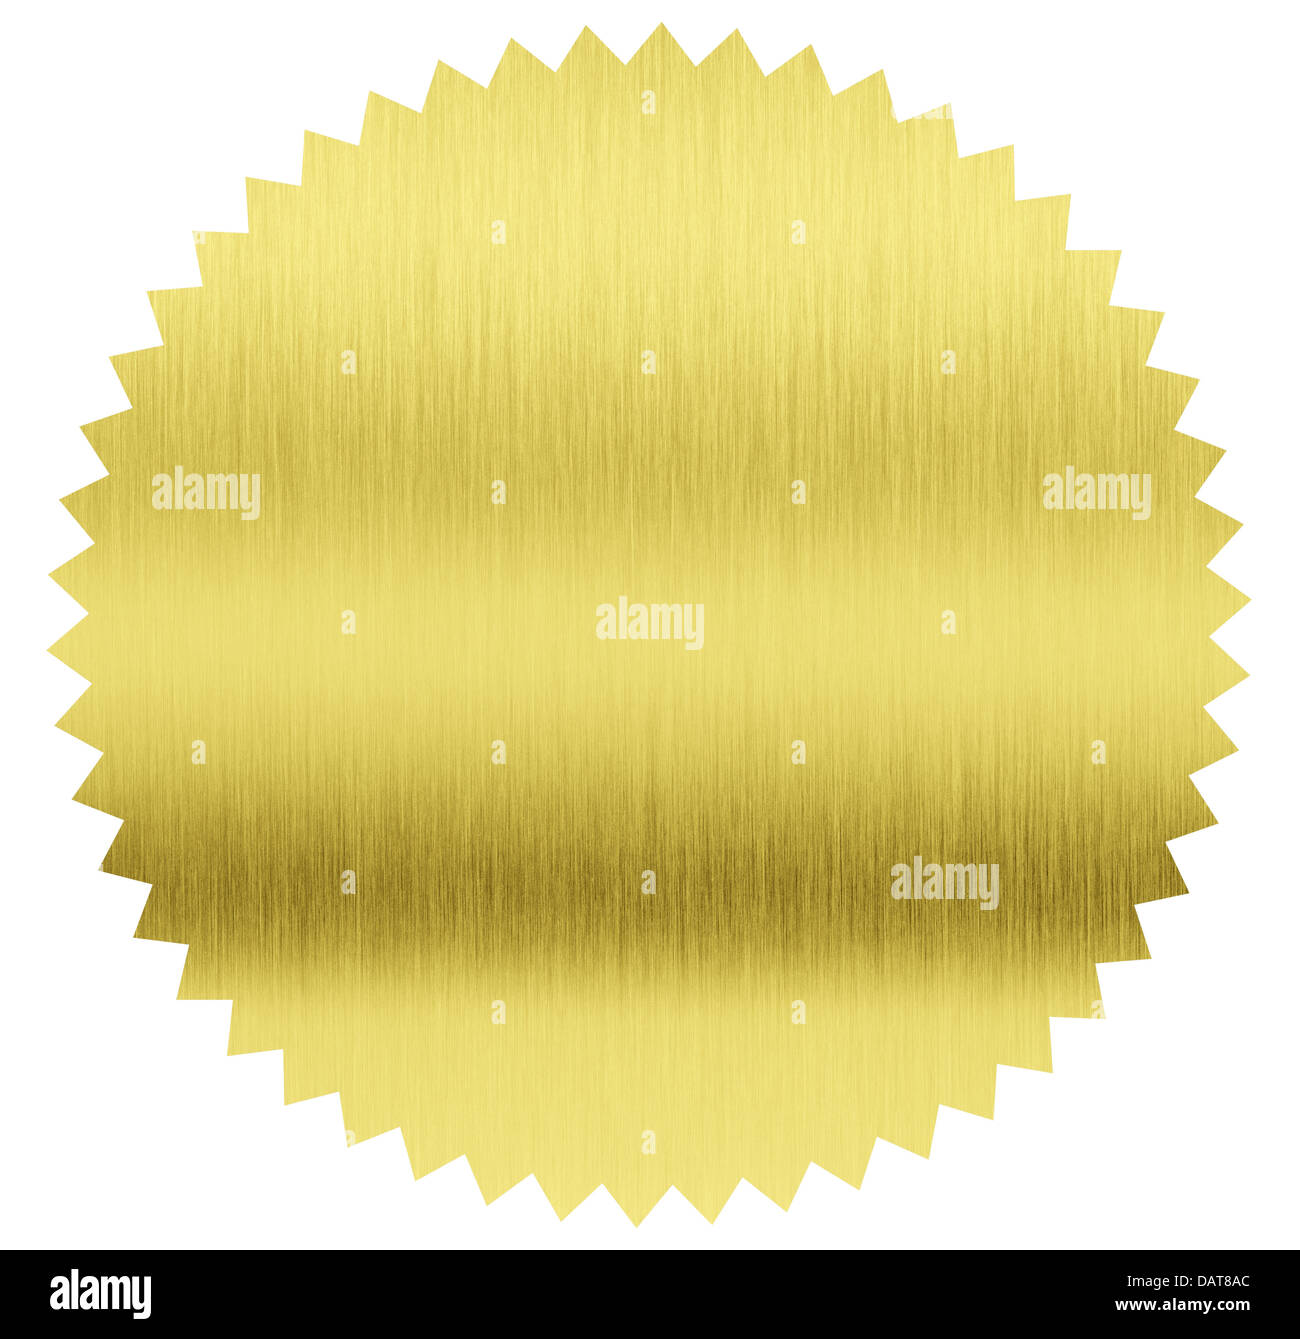 Goldfolie Stempel mit Clipping-Pfad enthalten Stockfoto